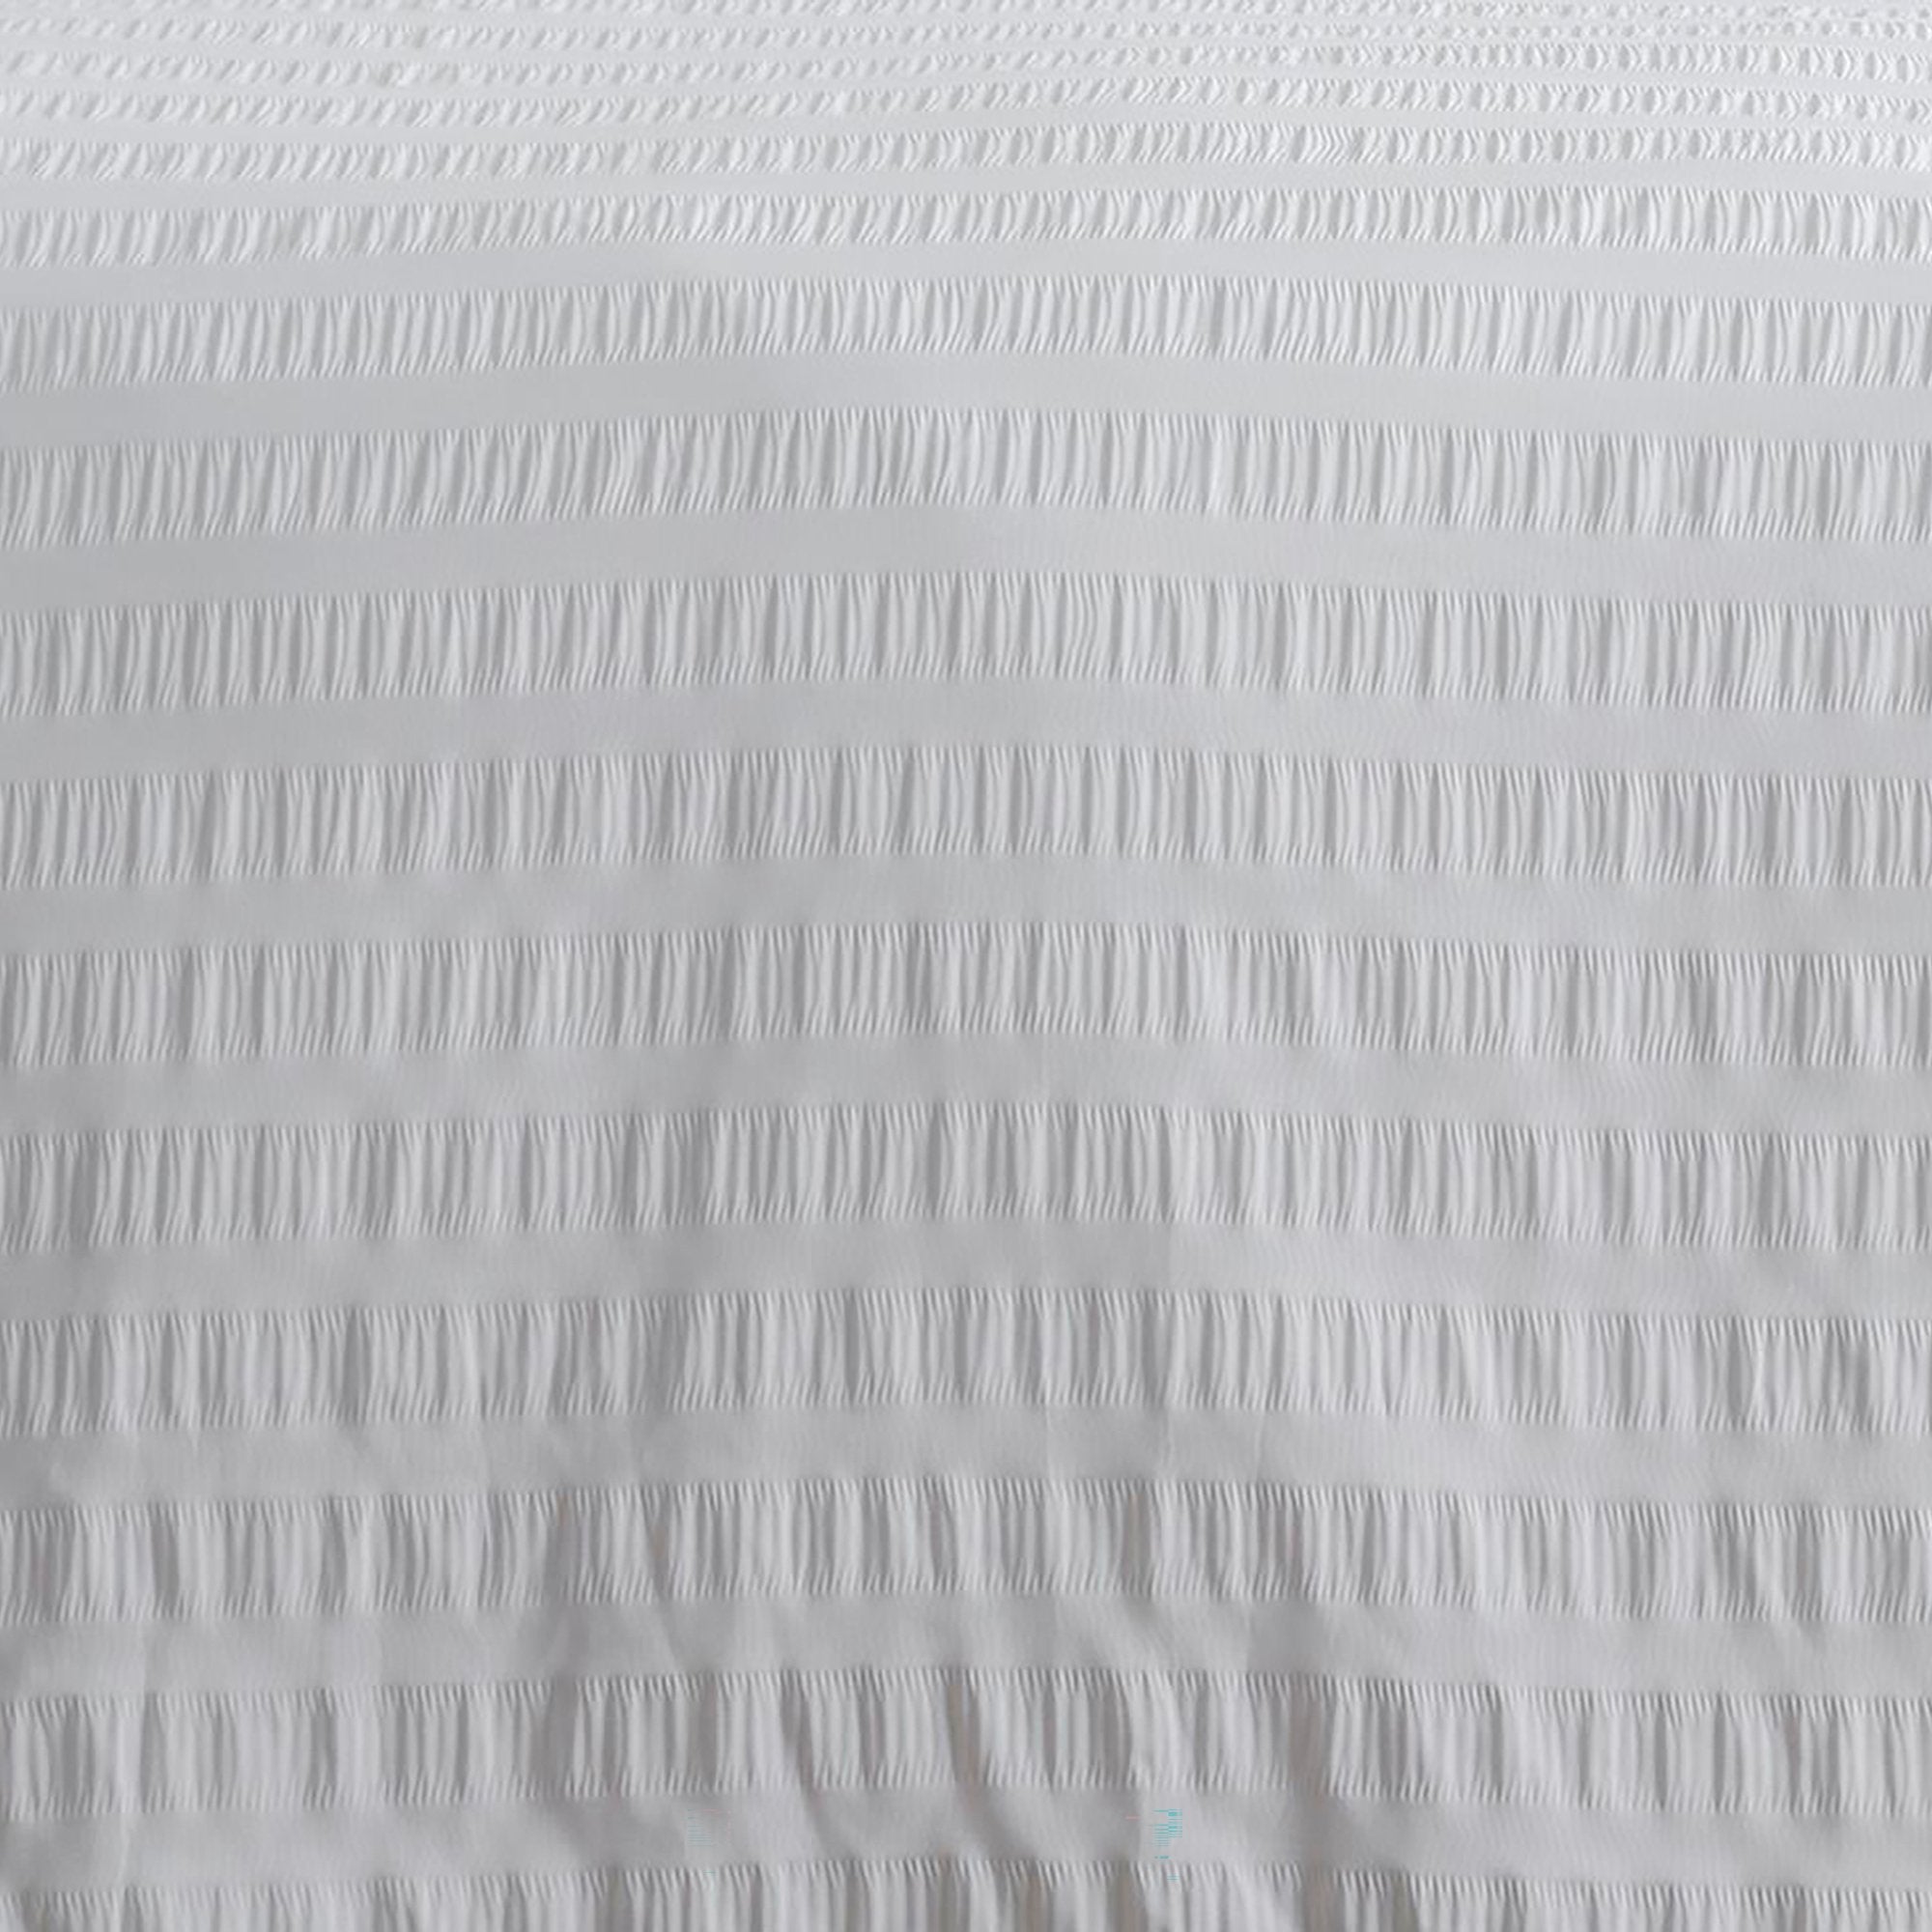 Duvet Cover Set Honley Seersucker by Serene in White